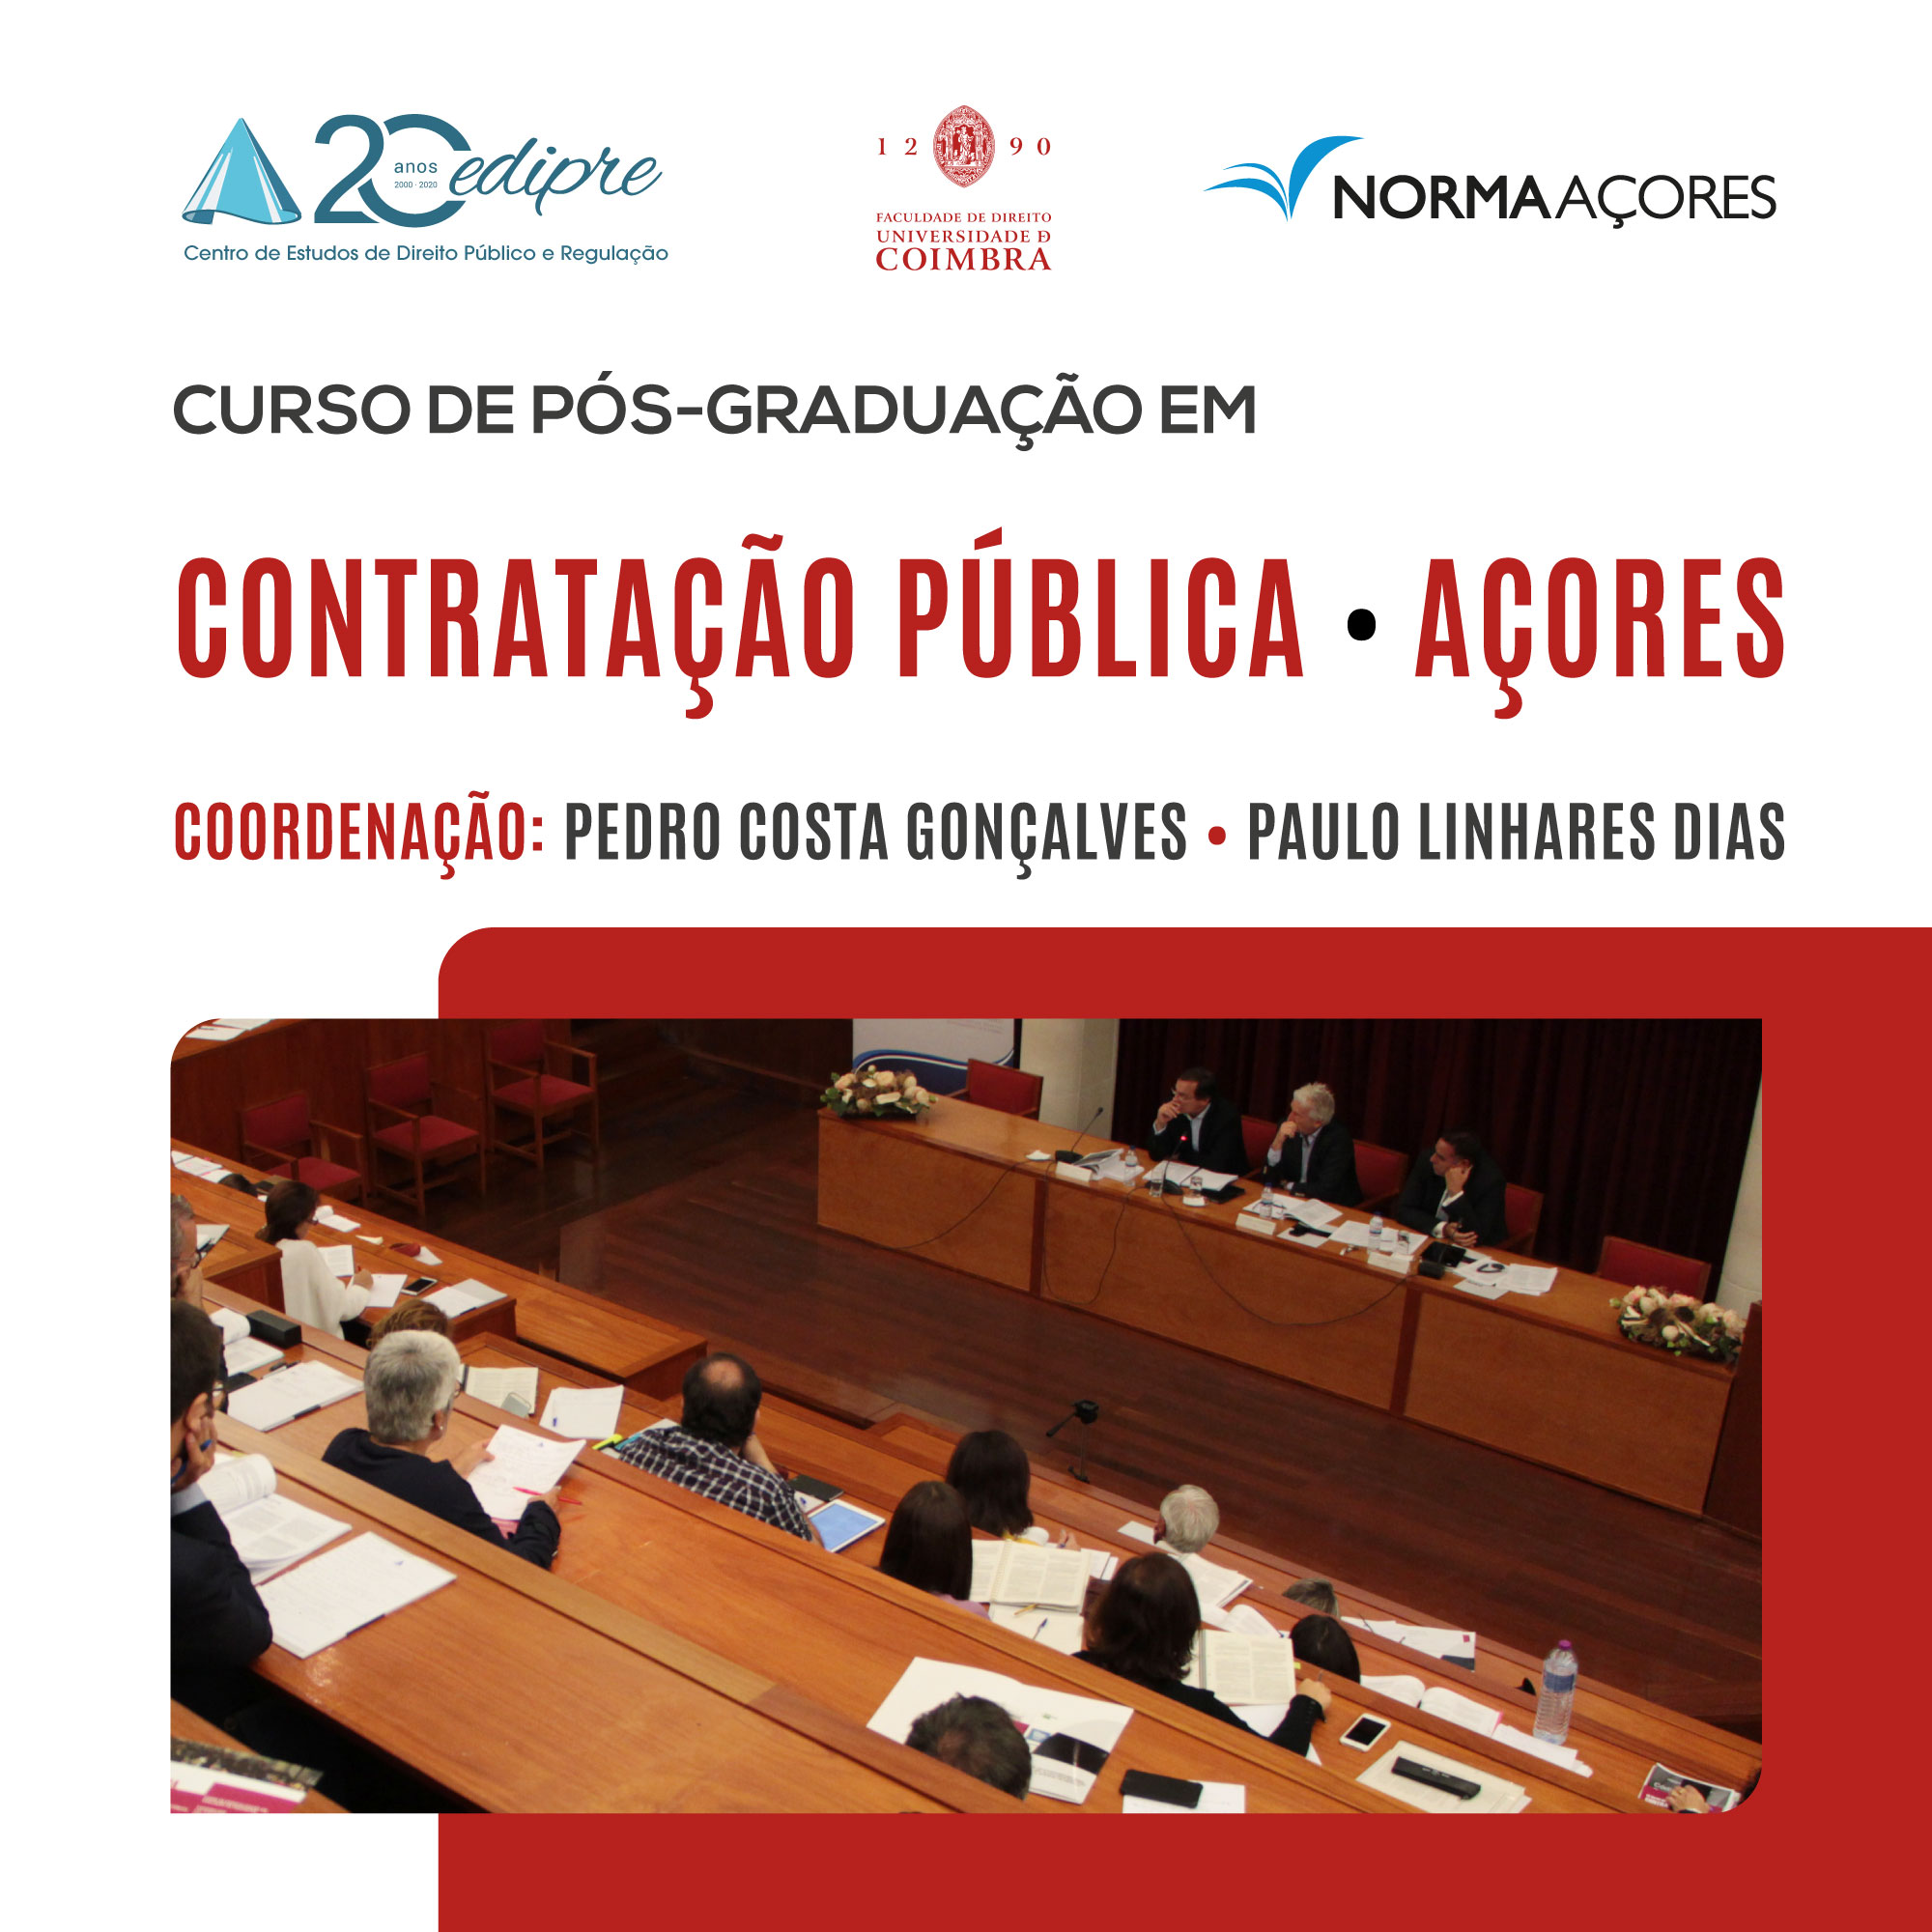 Curso de Pós-Graduação em Contratação Pública · Açores